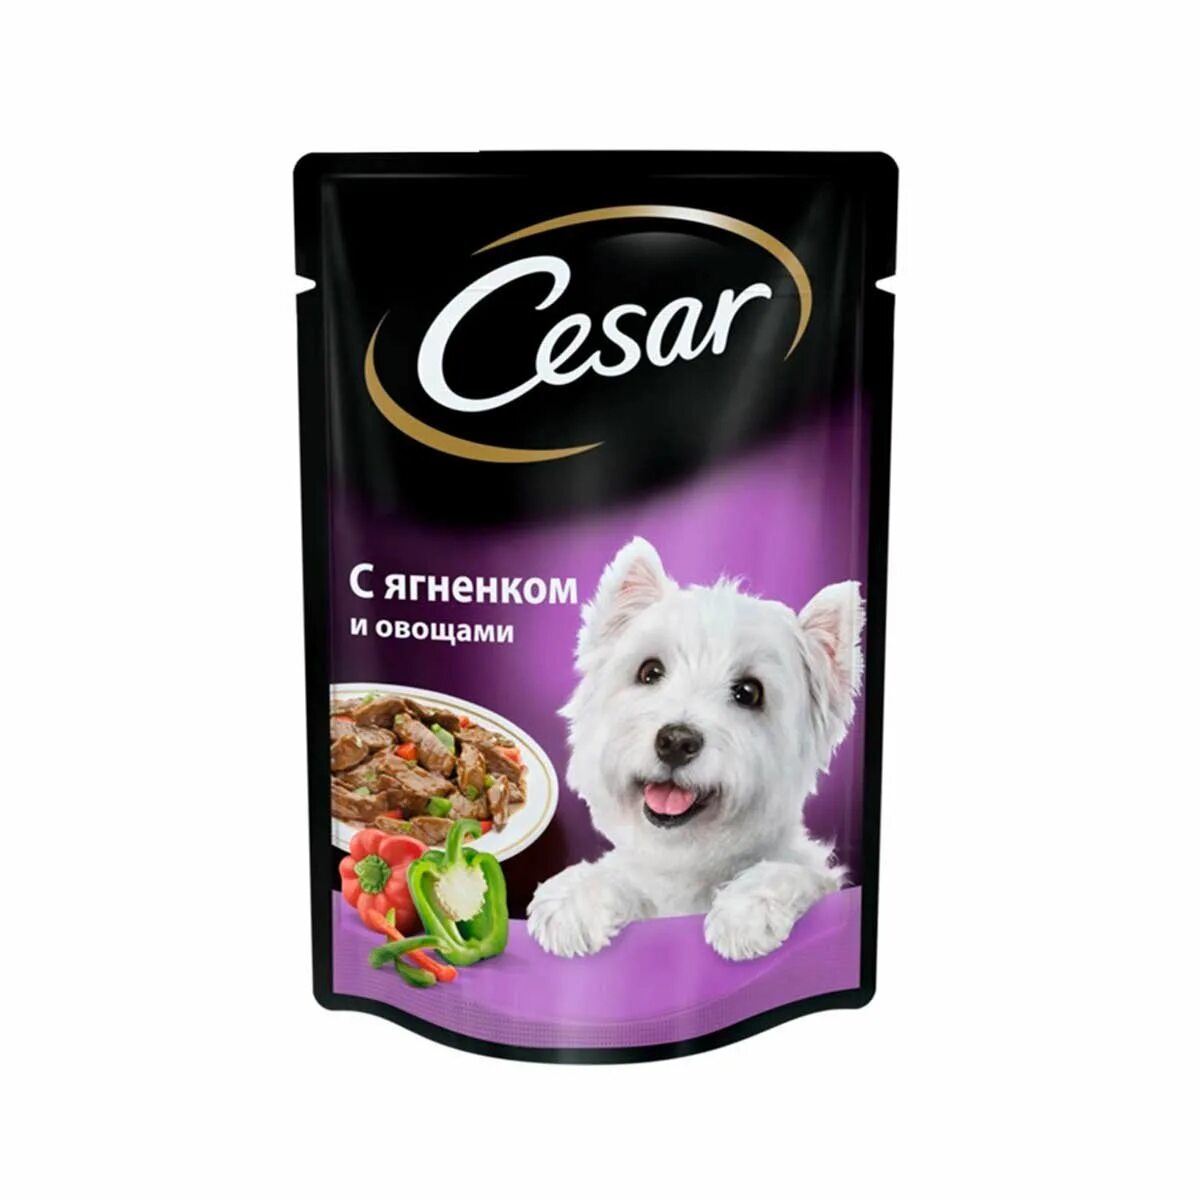 Корм для собак вкус. Корм для собак Cesar ягненок 100г. Корм для собак Cesar ягненок в сырном соусе 100г. Влажный корм для собак Cesar. Сезар корм влажный для собак.